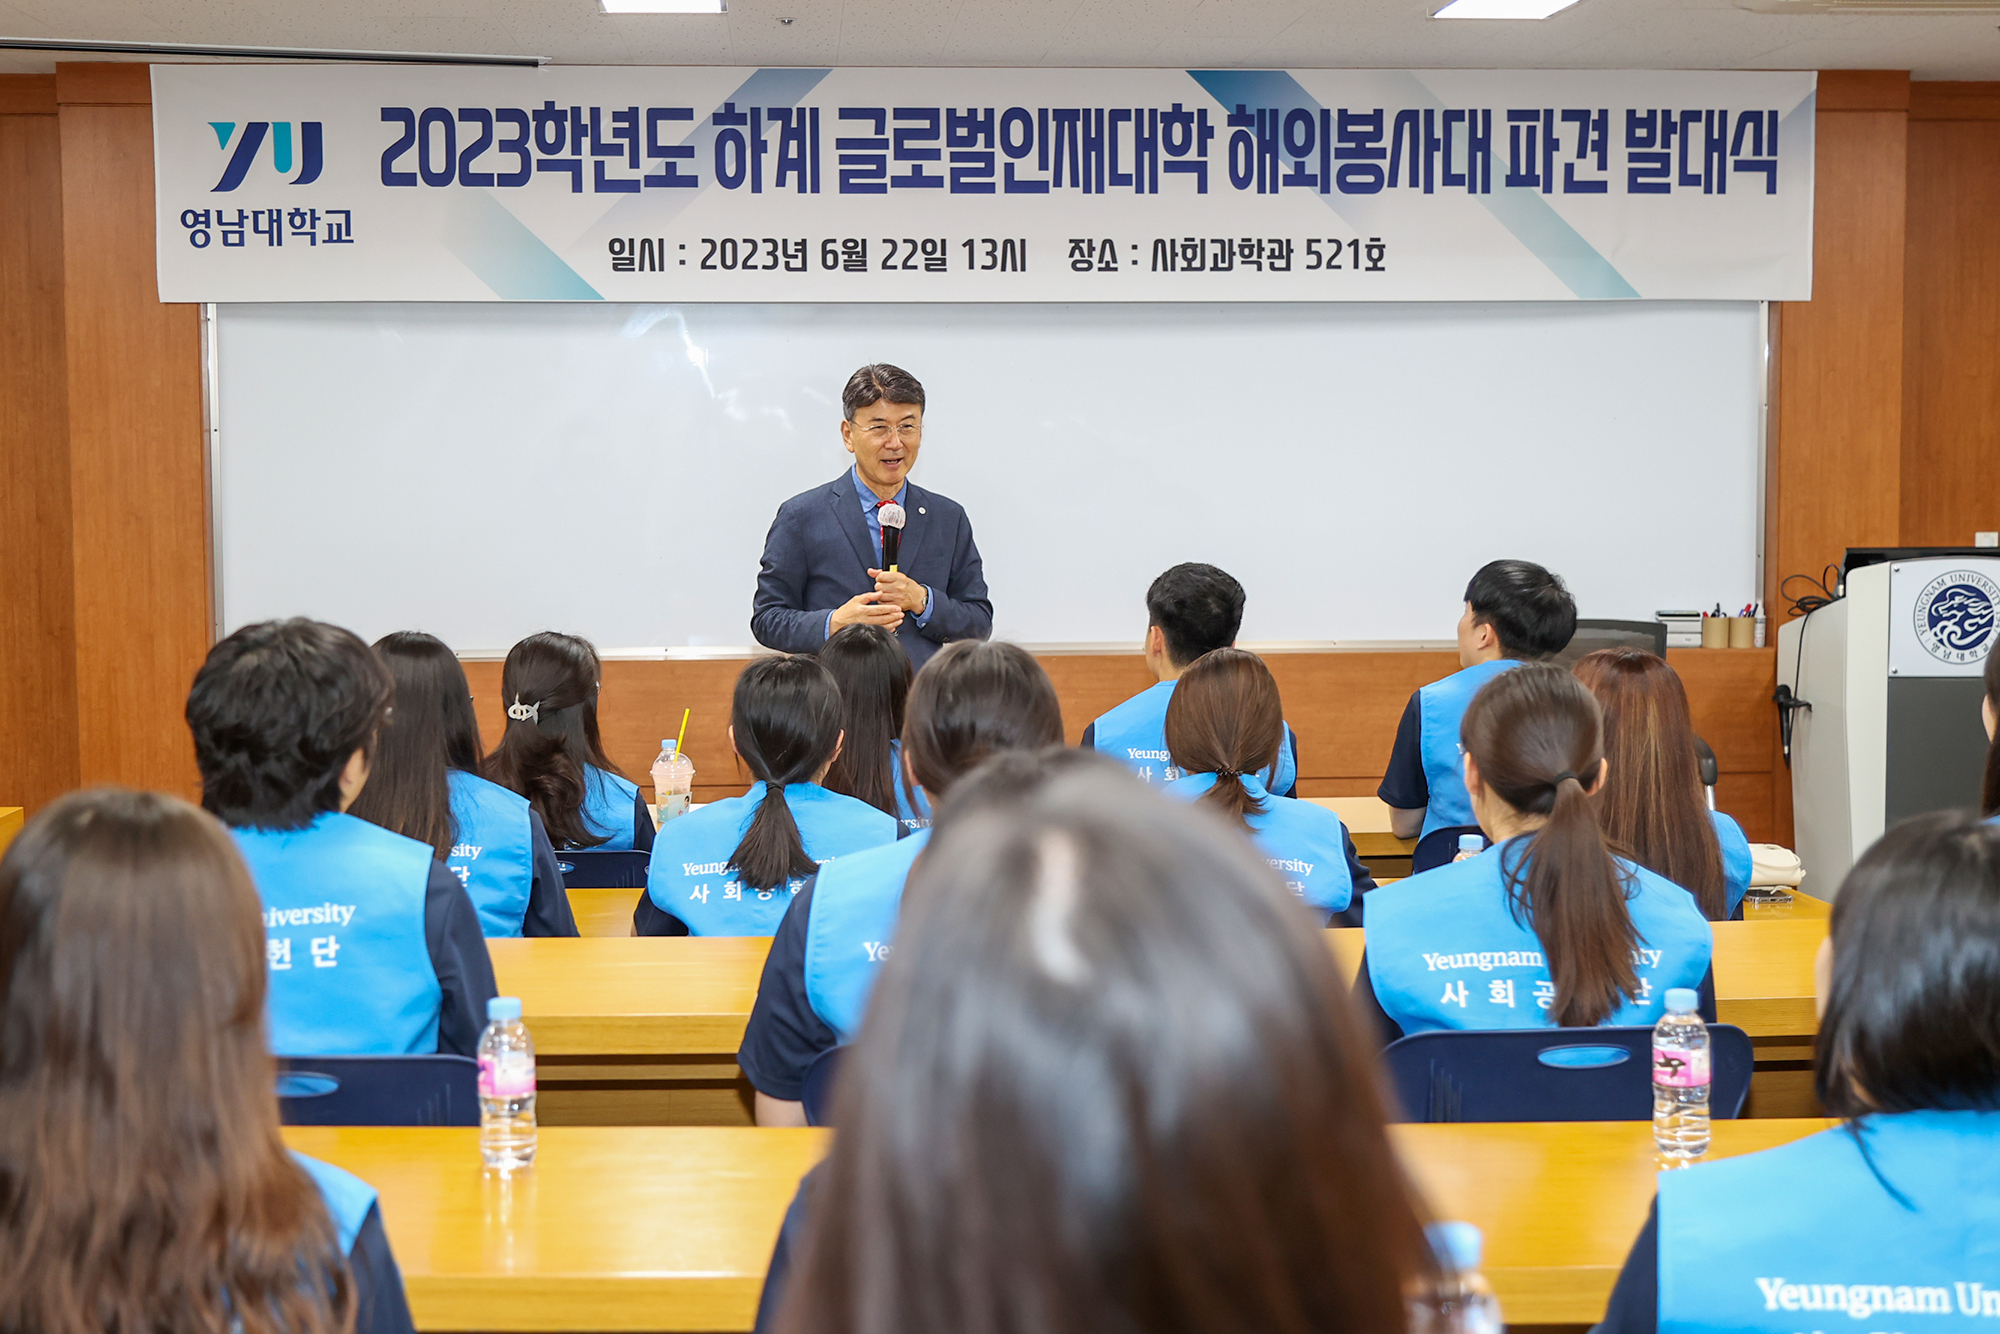 2023학년도 하계 글로벌인재대학 해외자원봉사 발대식